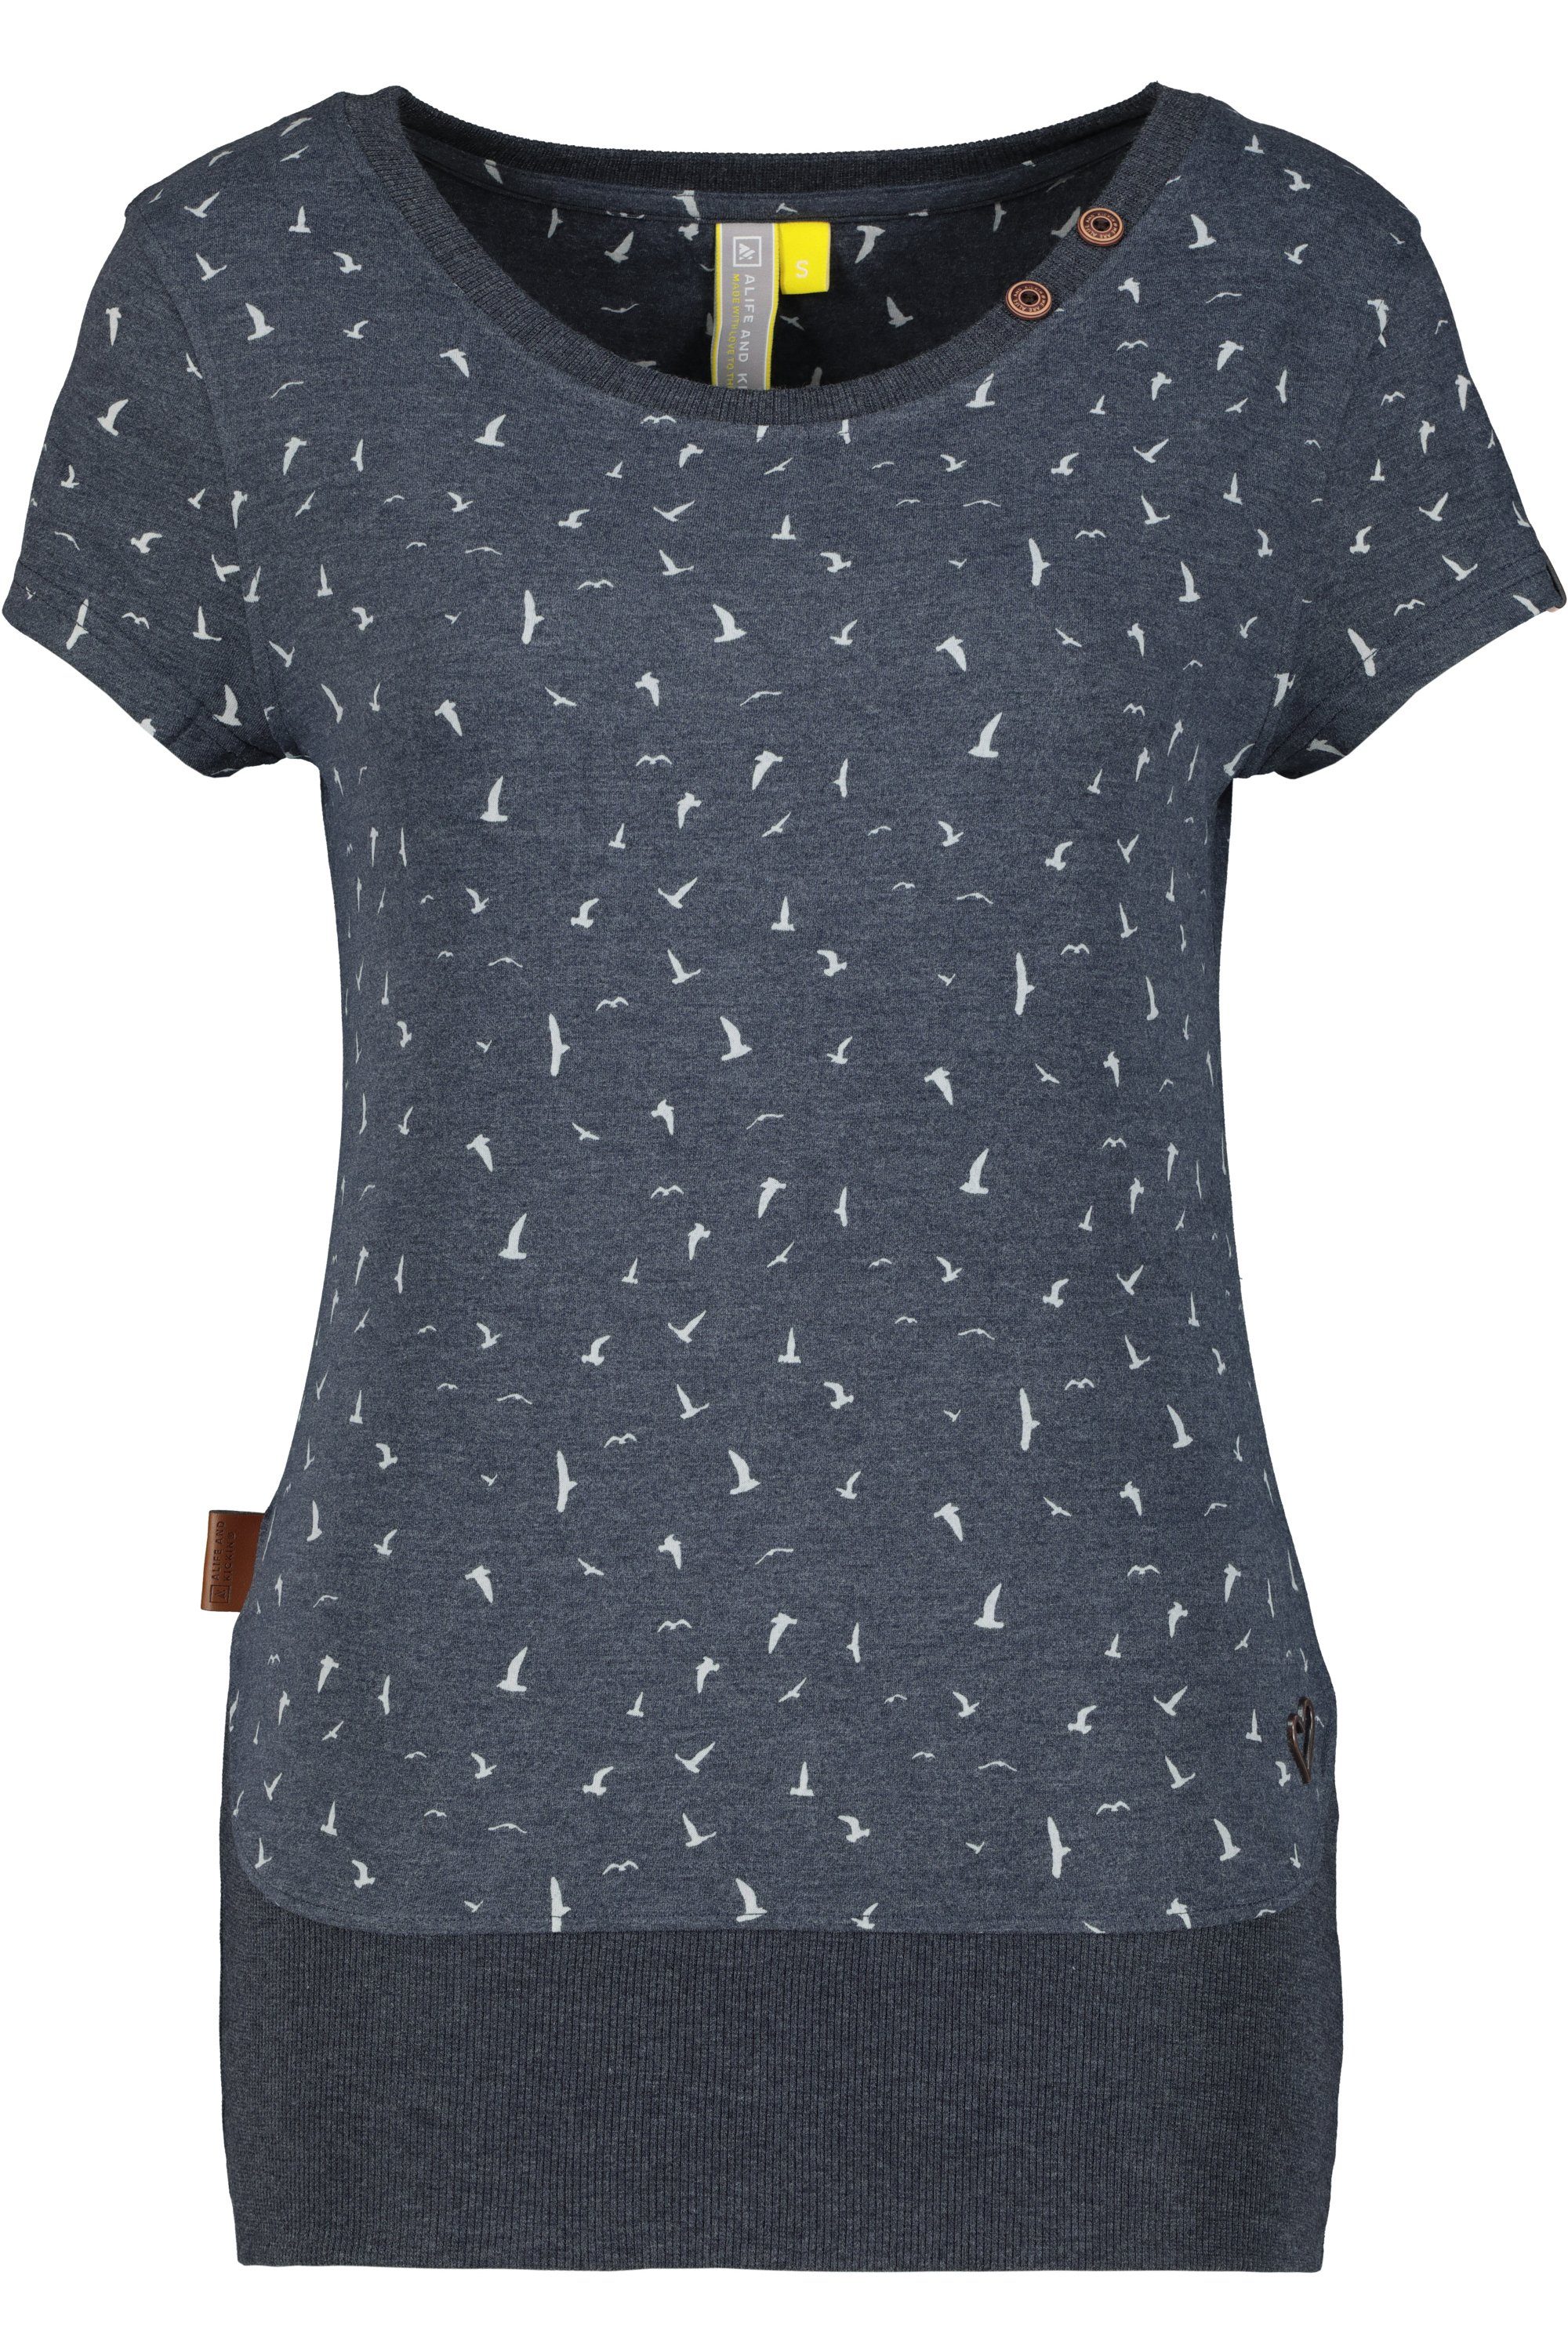 T-Shirt Alife & Damen Kickin marine CocoAK T-Shirt